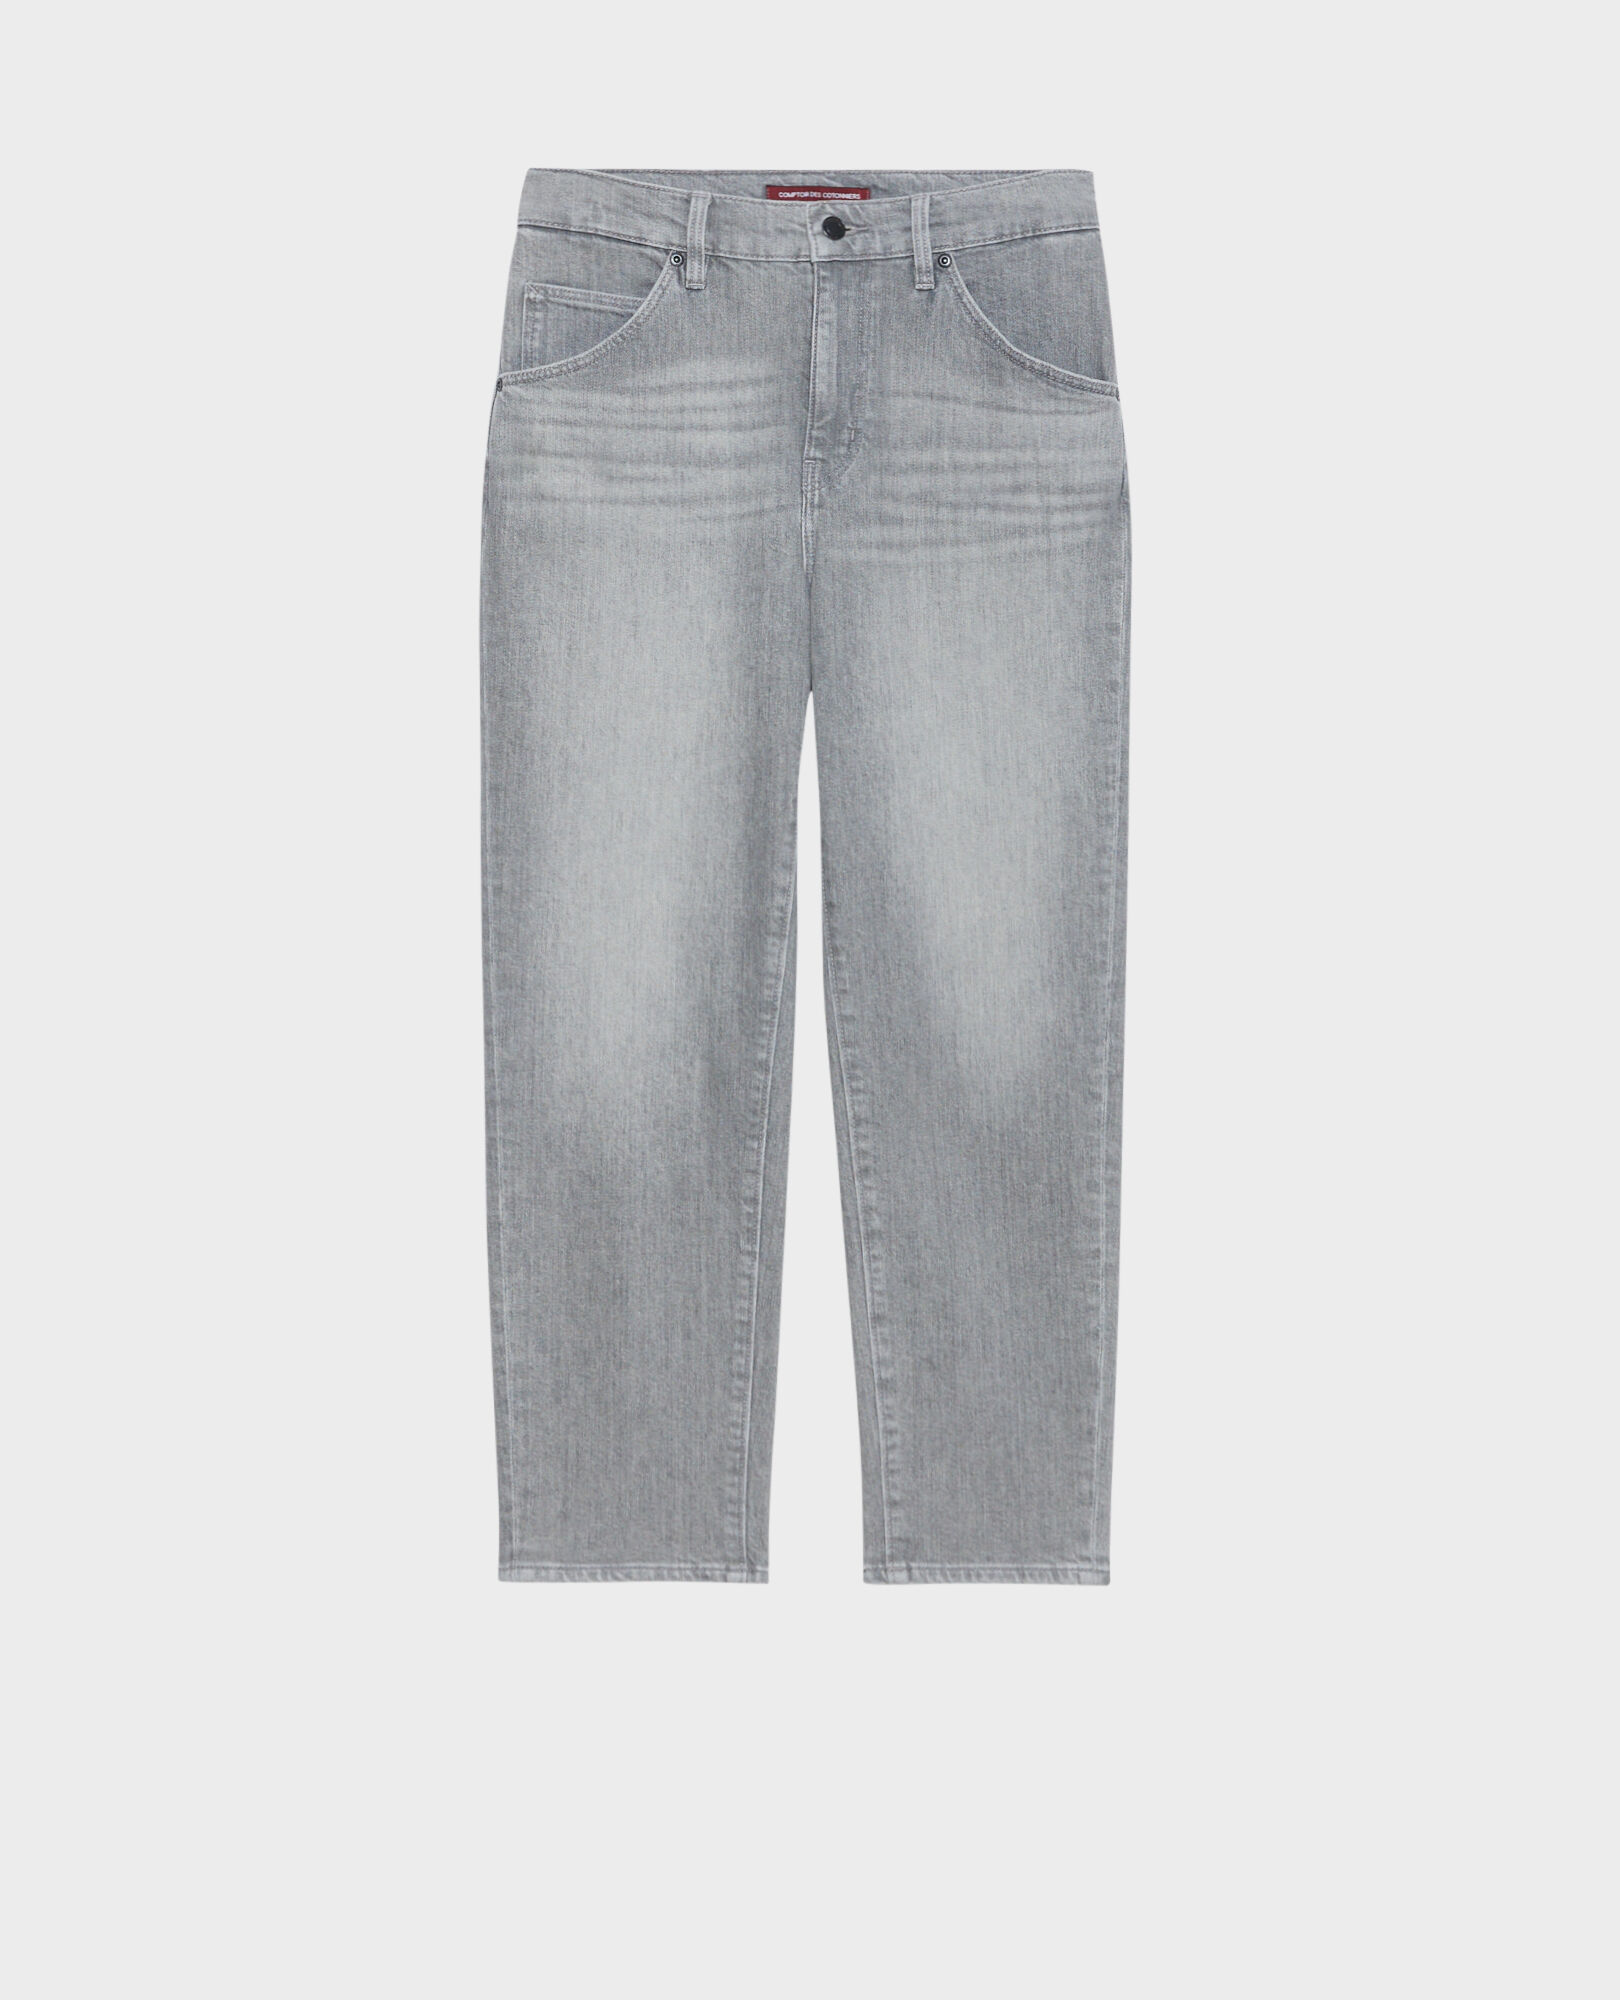 RITA - SLOUCHY - Jeans amplios de algodón 110 denim grey 2spe394